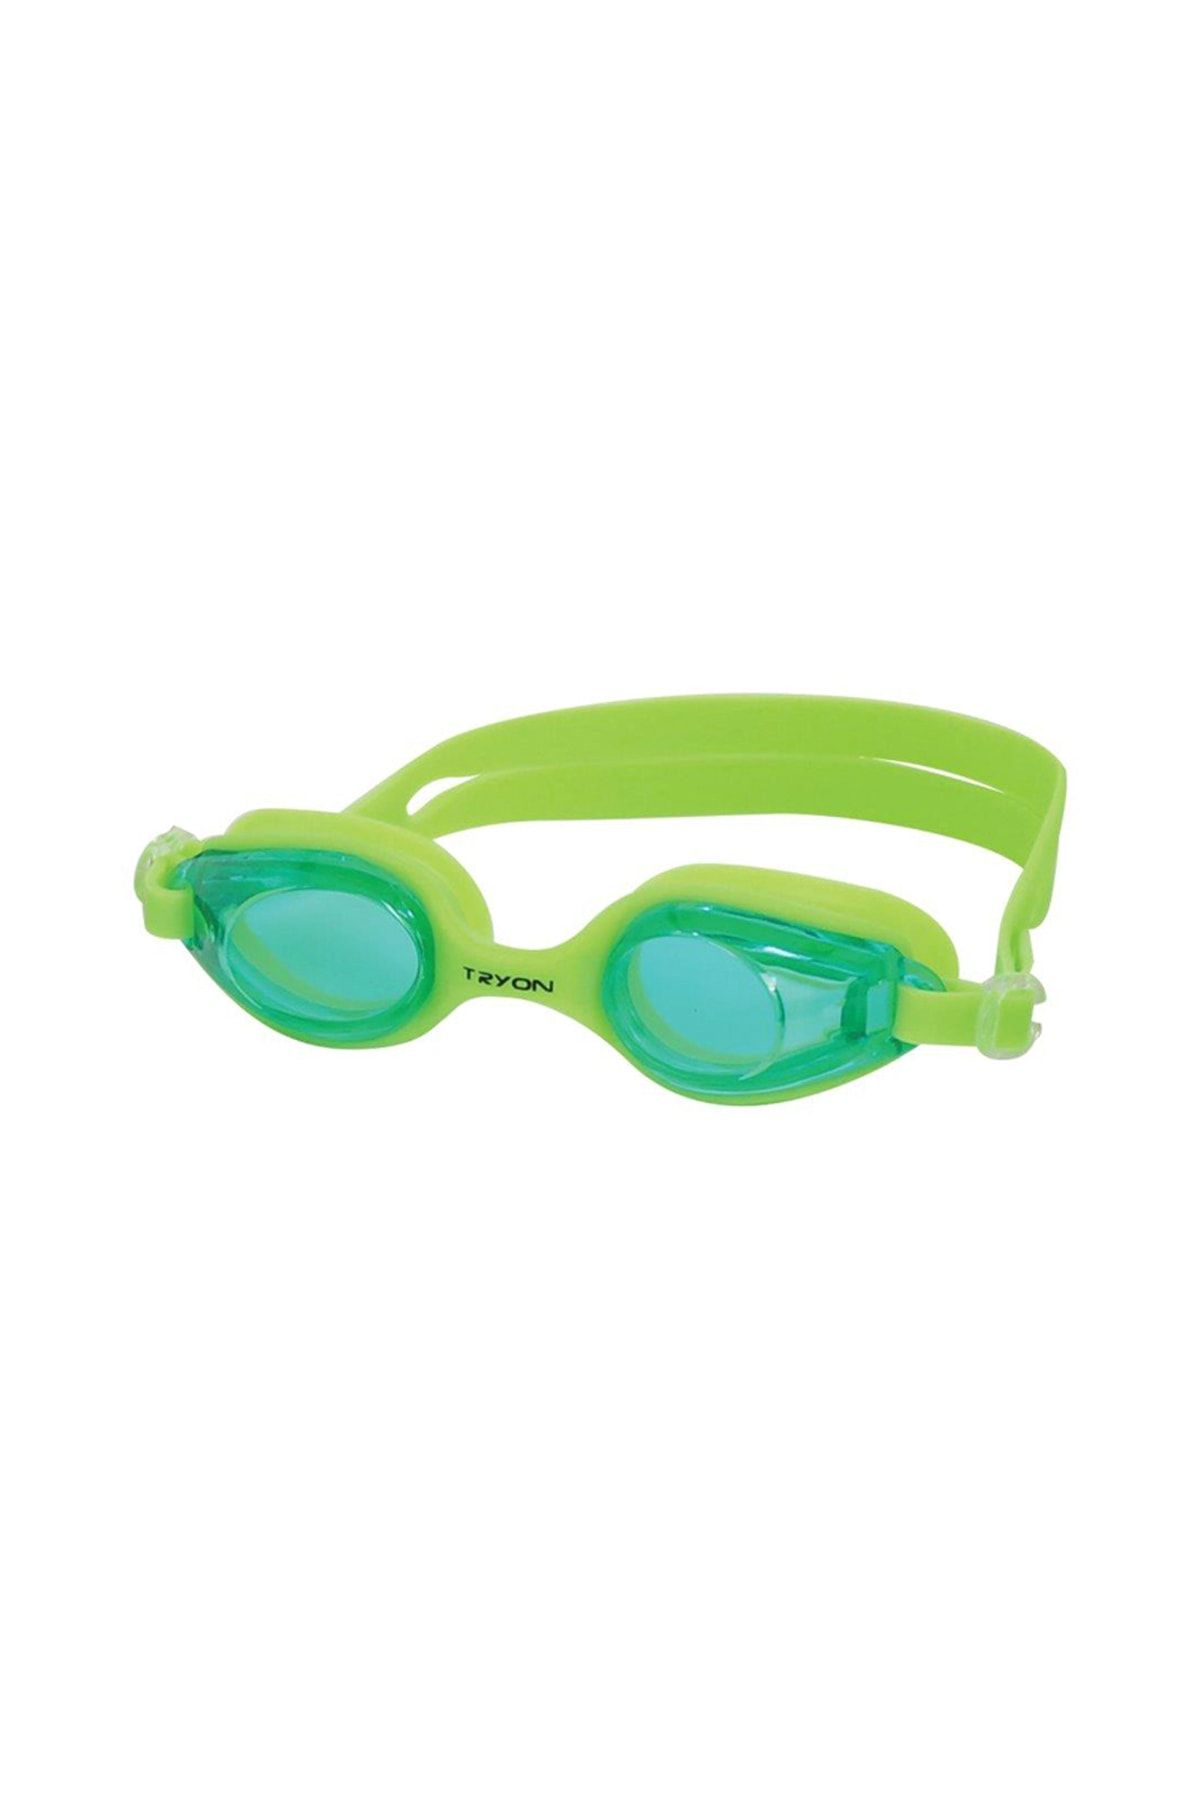 TRYON Neon Yeşil Yüzücü Gözlüğü Yg-2030yüzücü Gözlüğü Yg-2030